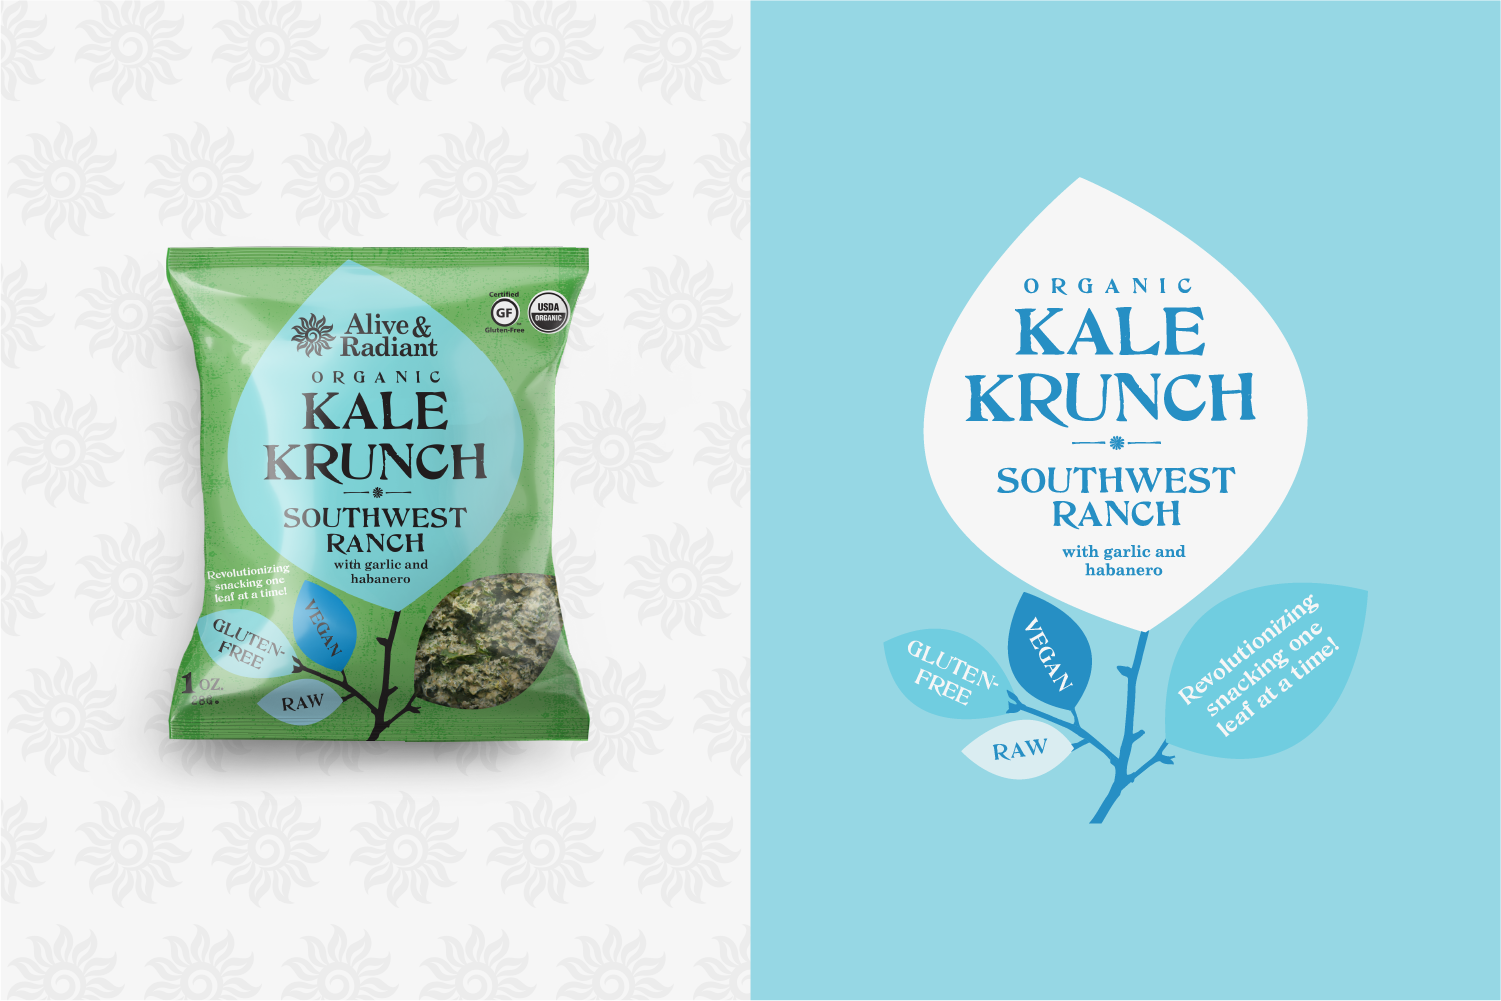 Alive & Radiant Kale Krunch Southwest Ranch